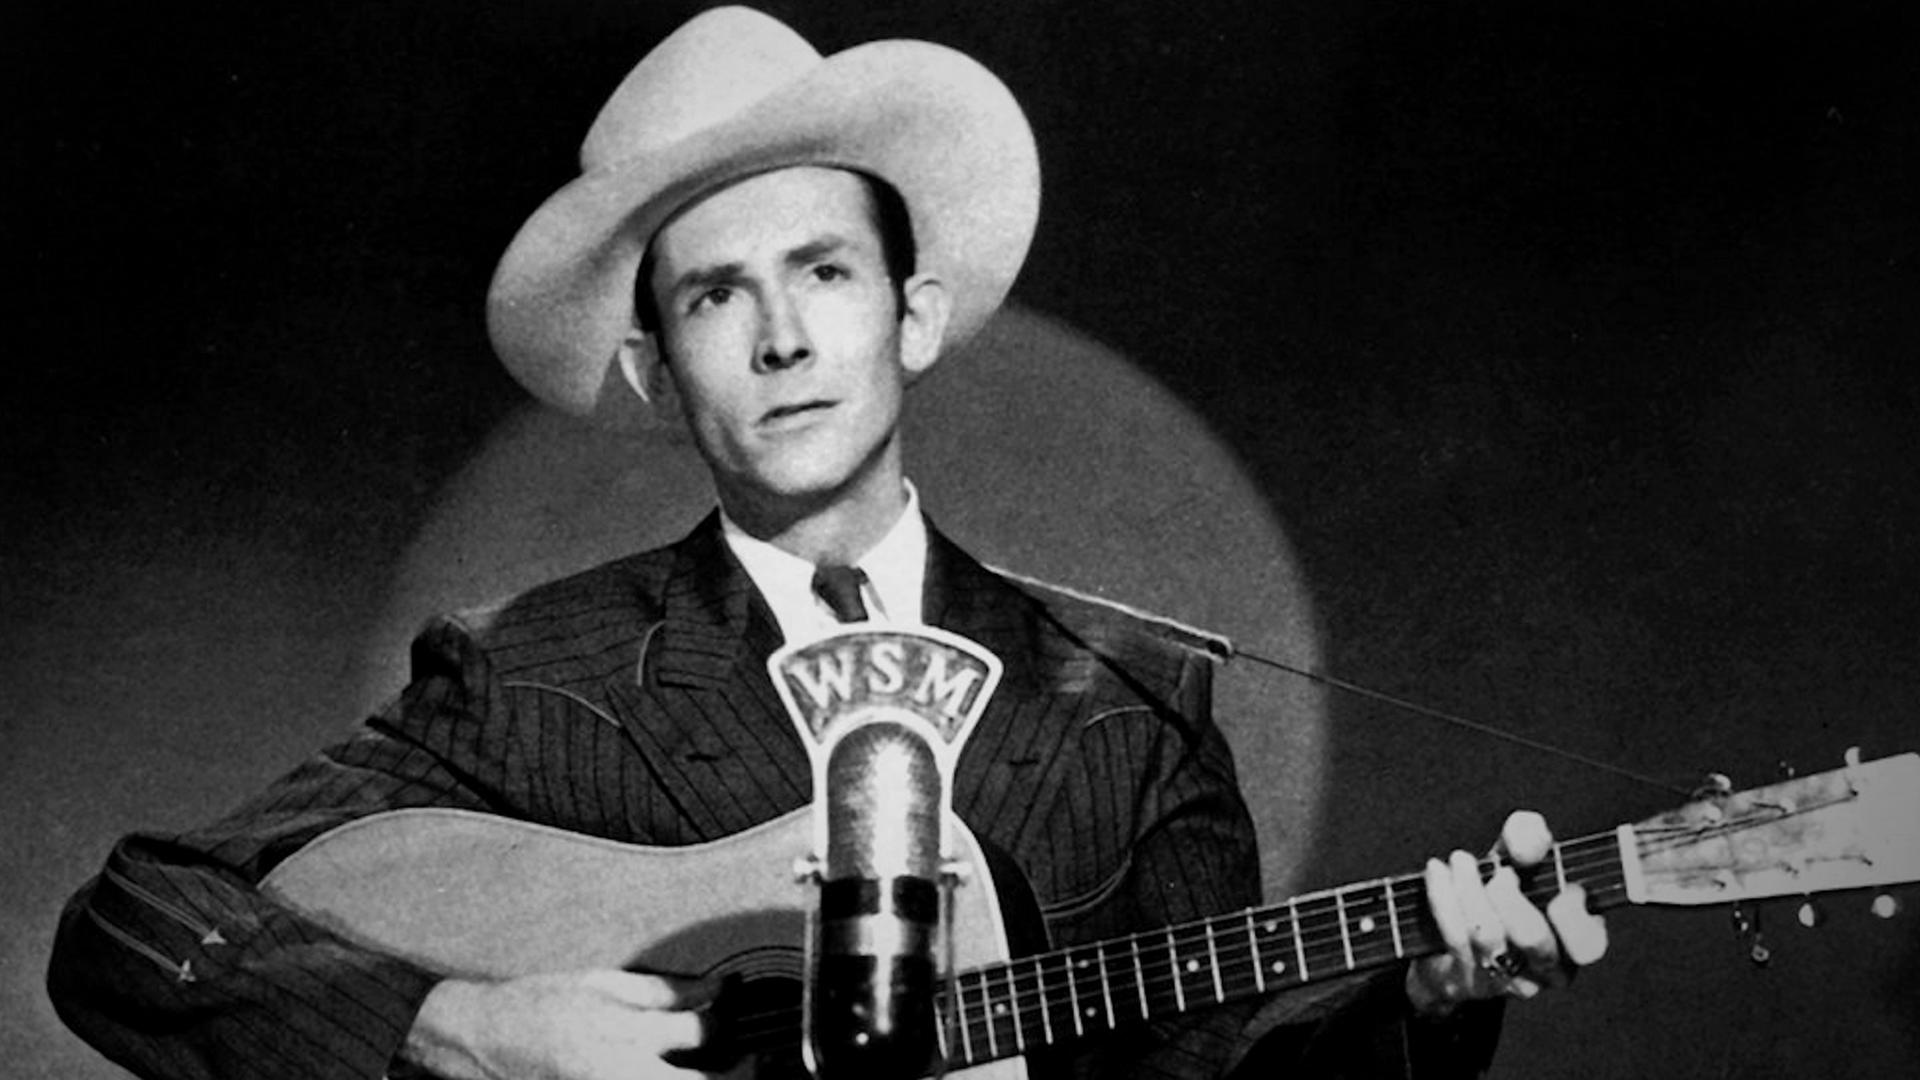  Schwarz-Weiß-Foto von Hank Williams mit Cowboyhut und Gitarre am Mikrofon.